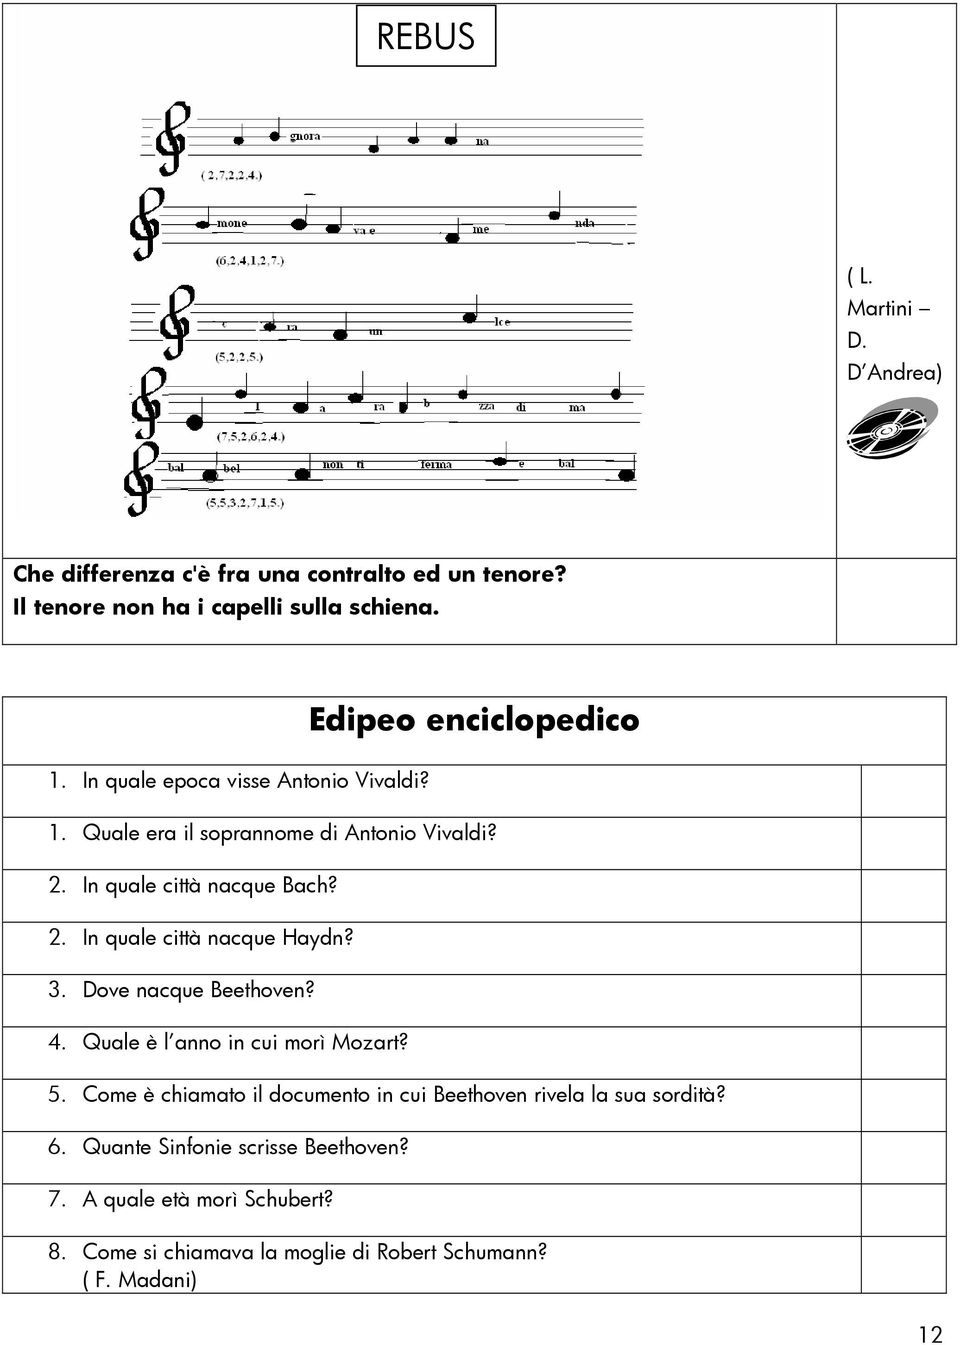 Cruciverba Rebus Giochi Di Abilita Musicale Quiz Sudoku Aneddoti Pdf Download Gratuito